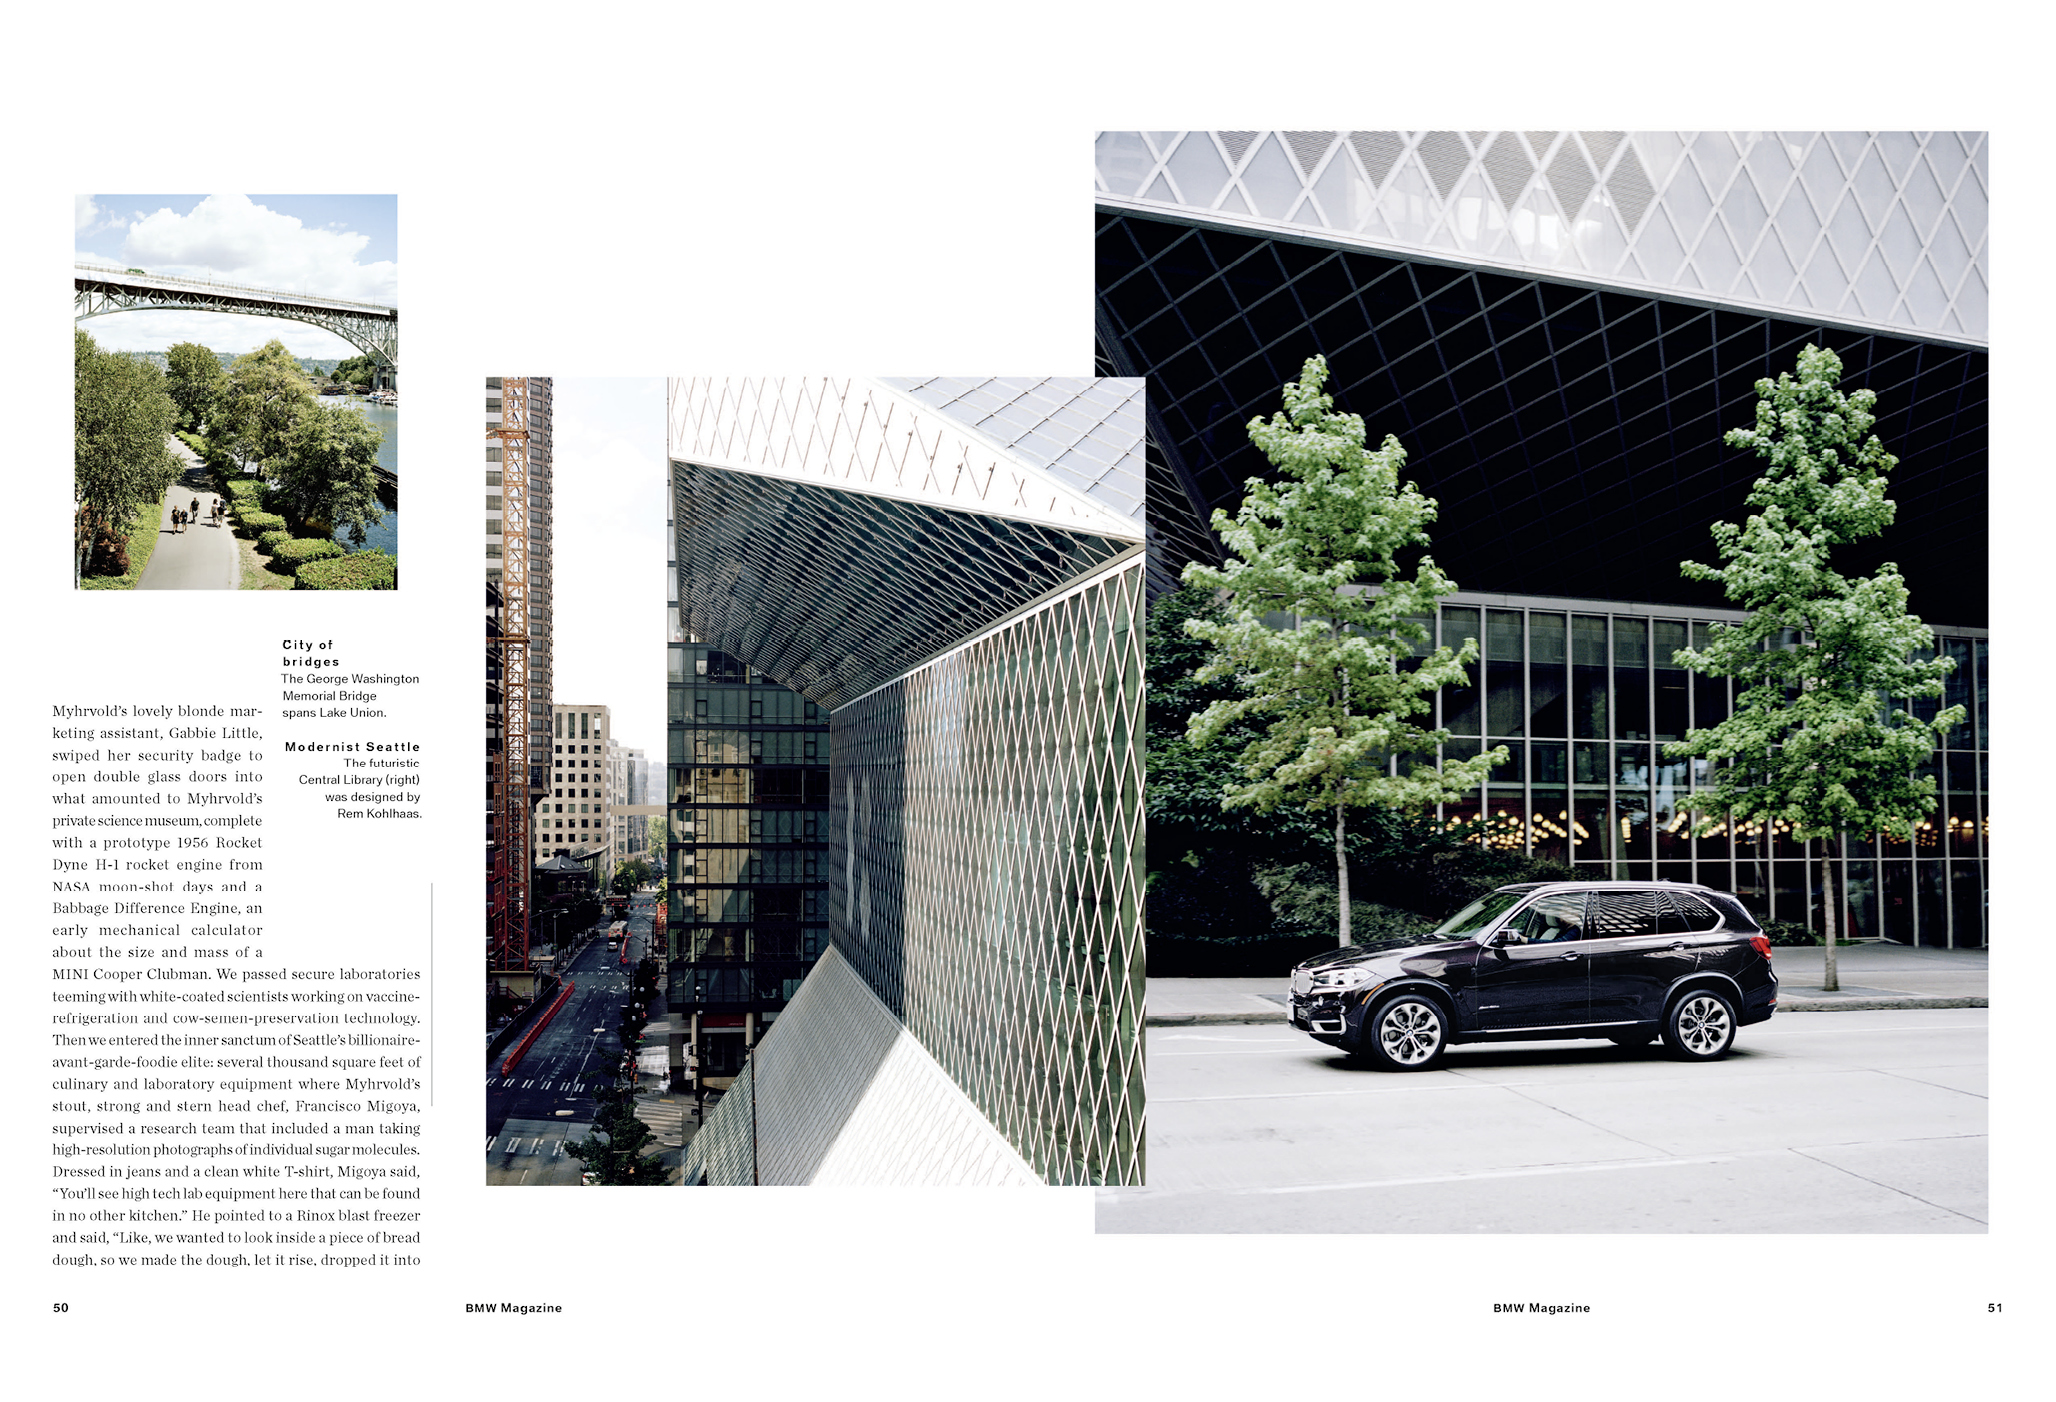 ringzwei BMW Magazin – 02.2016